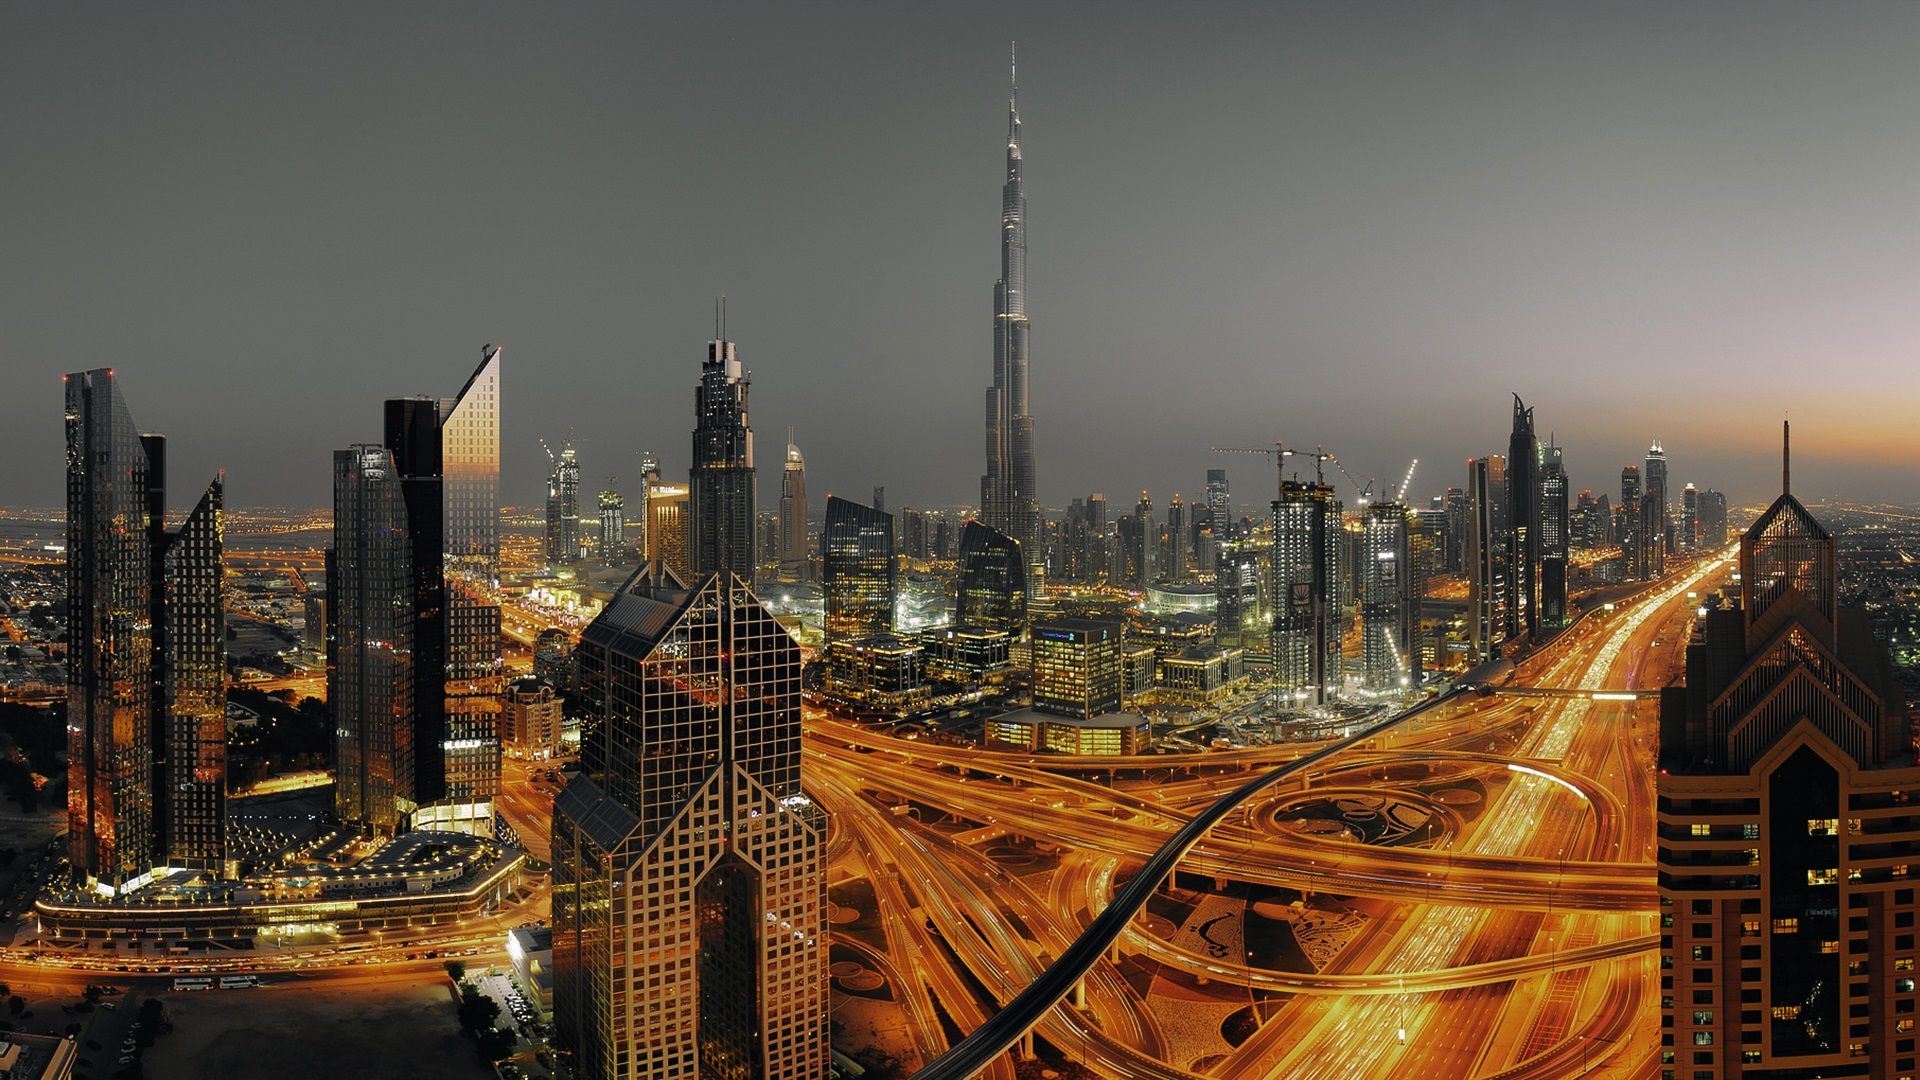  Dubai Hintergrundbild 1920x1080. Dubai, Vereinigte Arabische Emirate, urban, Wolkenkratzer, Lichter, Straßen 1920x1080 Full HD 2K Hintergrundbilder, HD, Bild